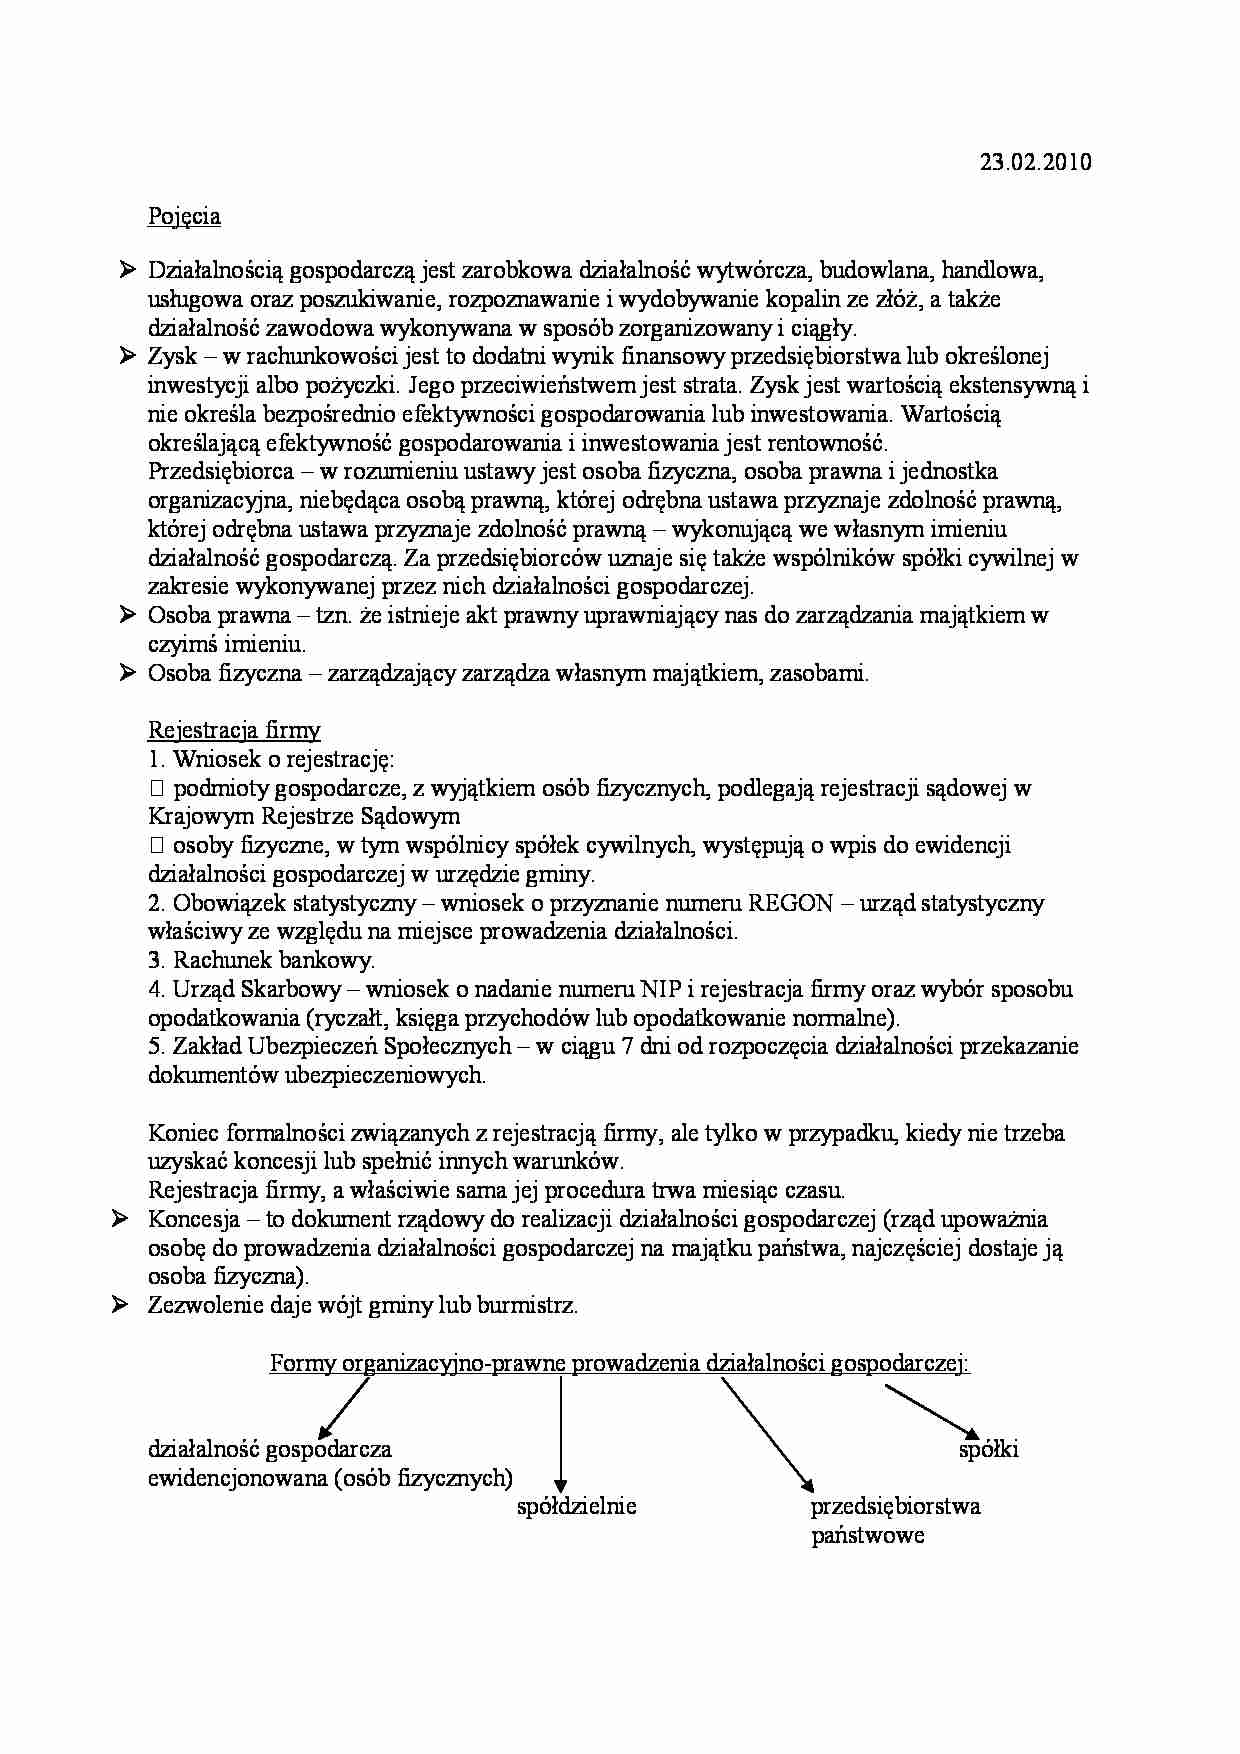 Nauka o organizacji - notatki z wykładu - strona 1